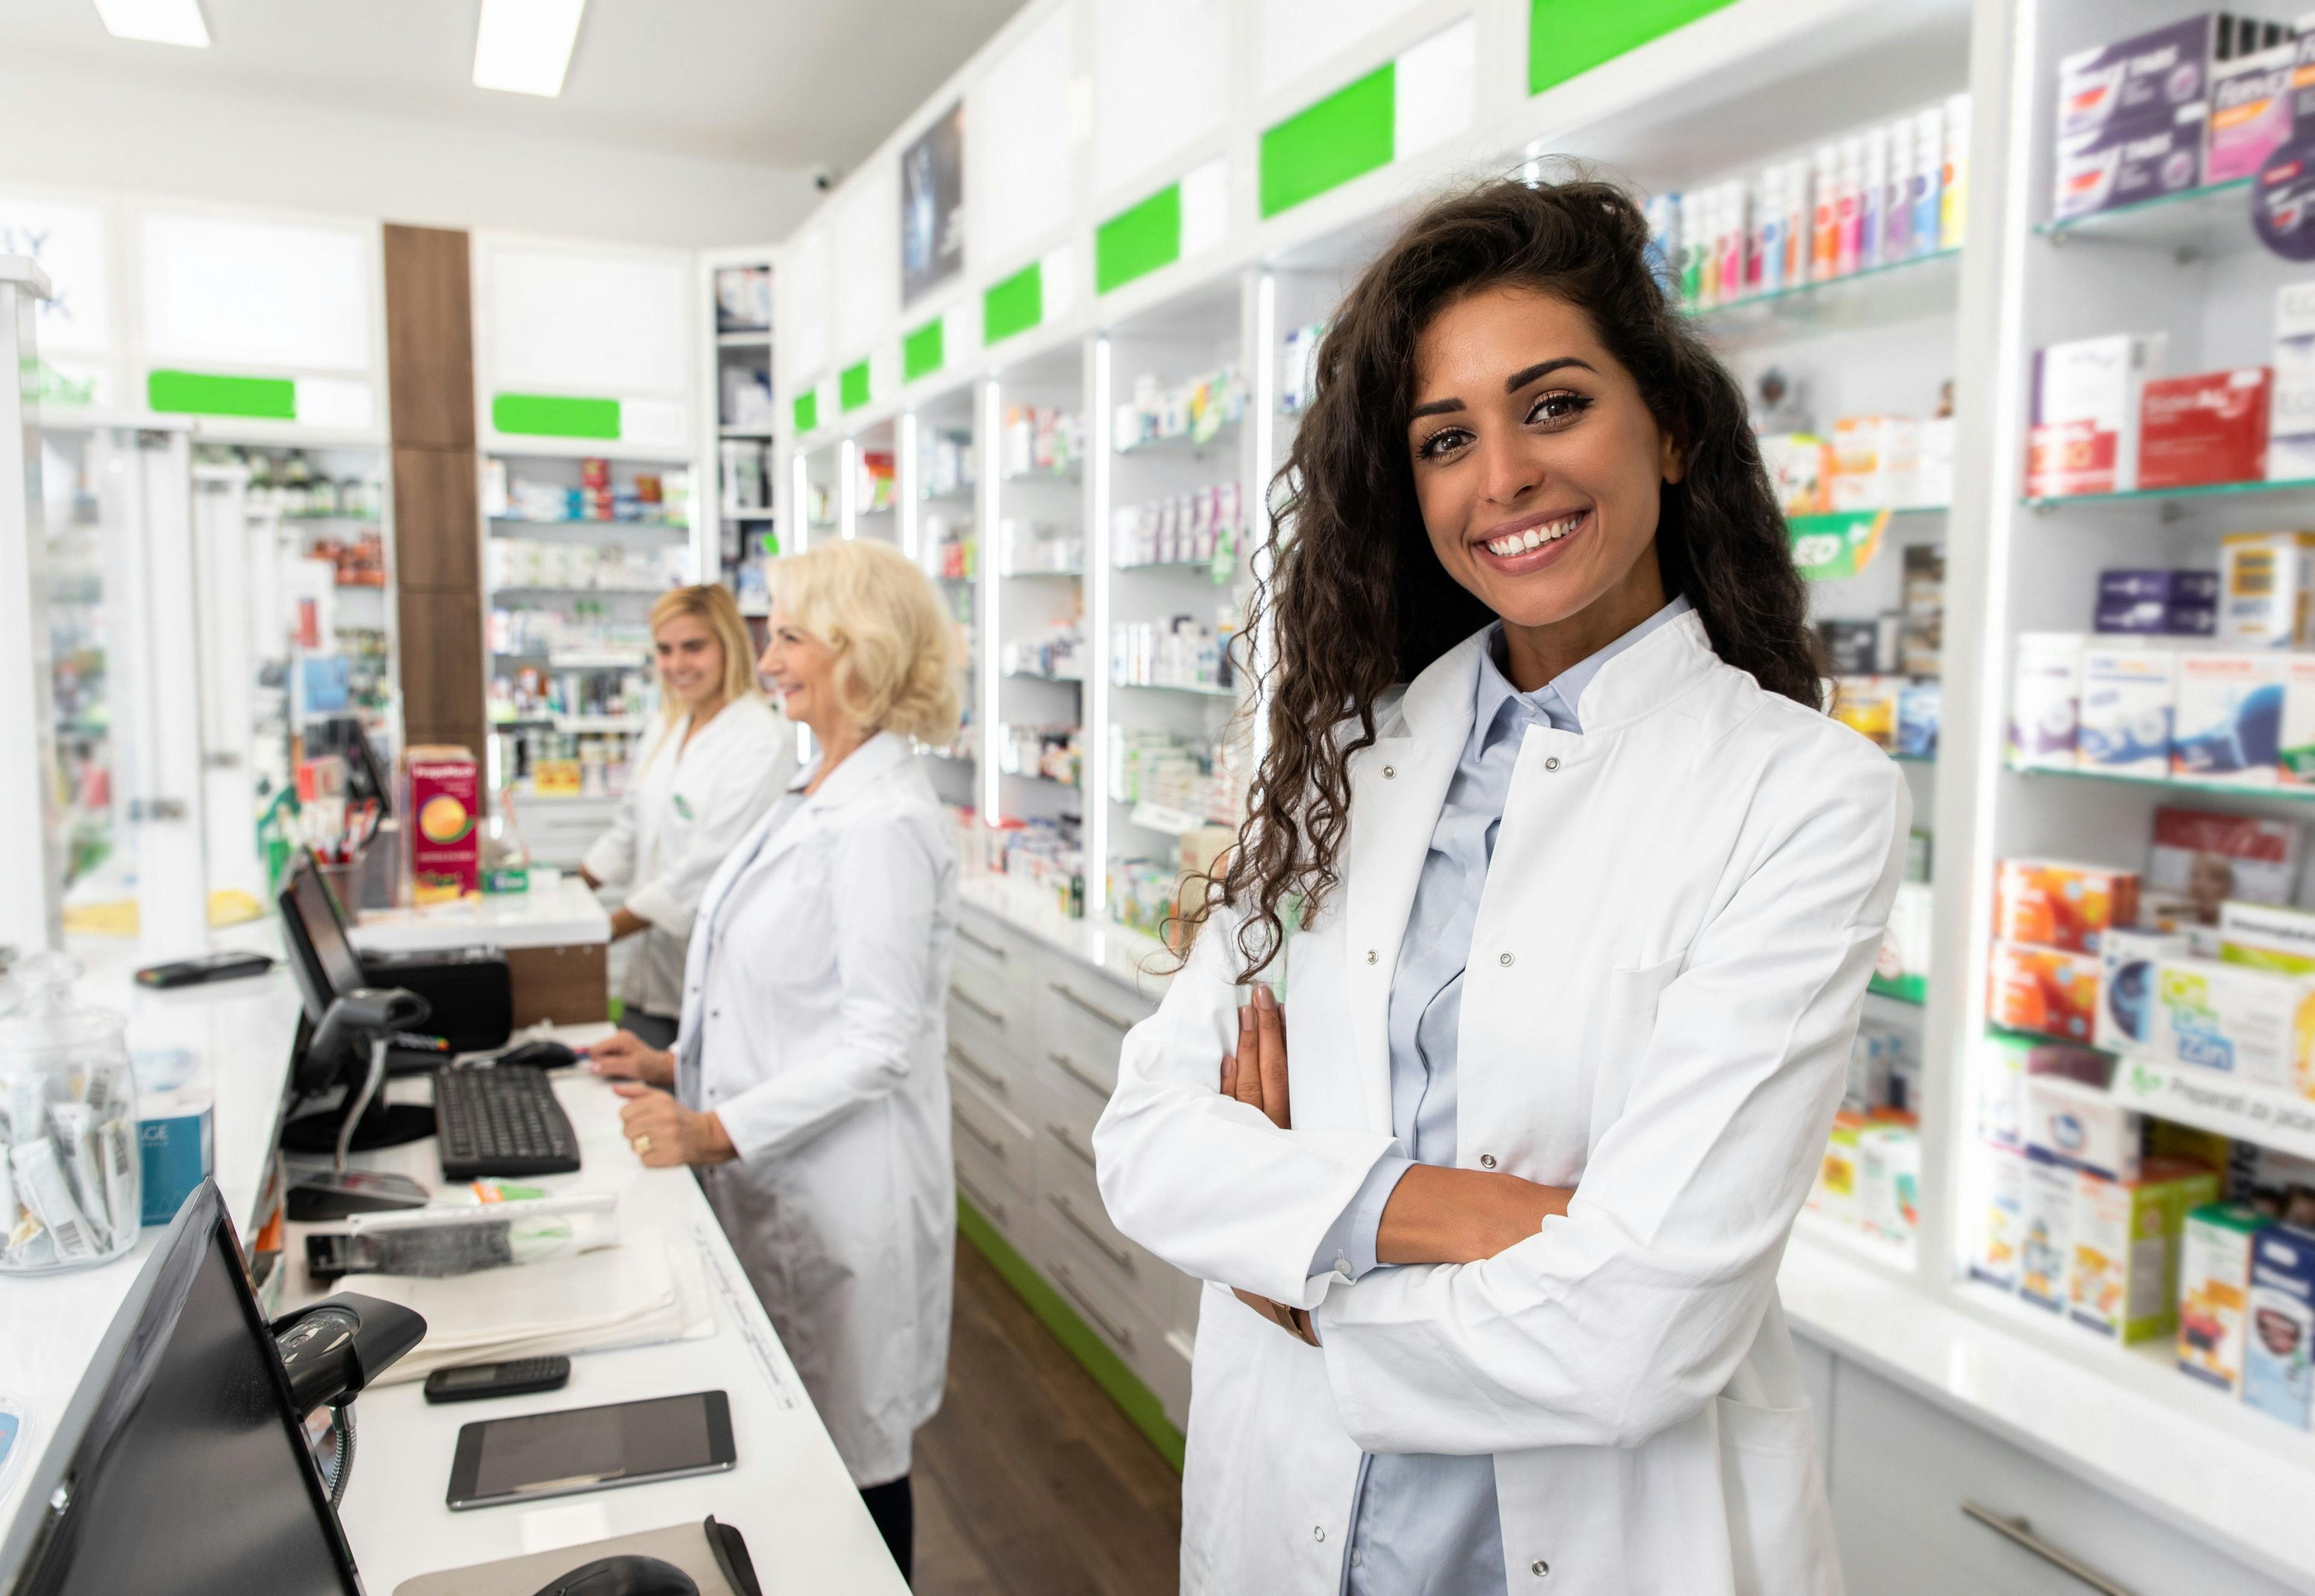 Portrait of female pharmacist in drugstore | Image Credit: Zoran Zeremski - stock.adobe.com